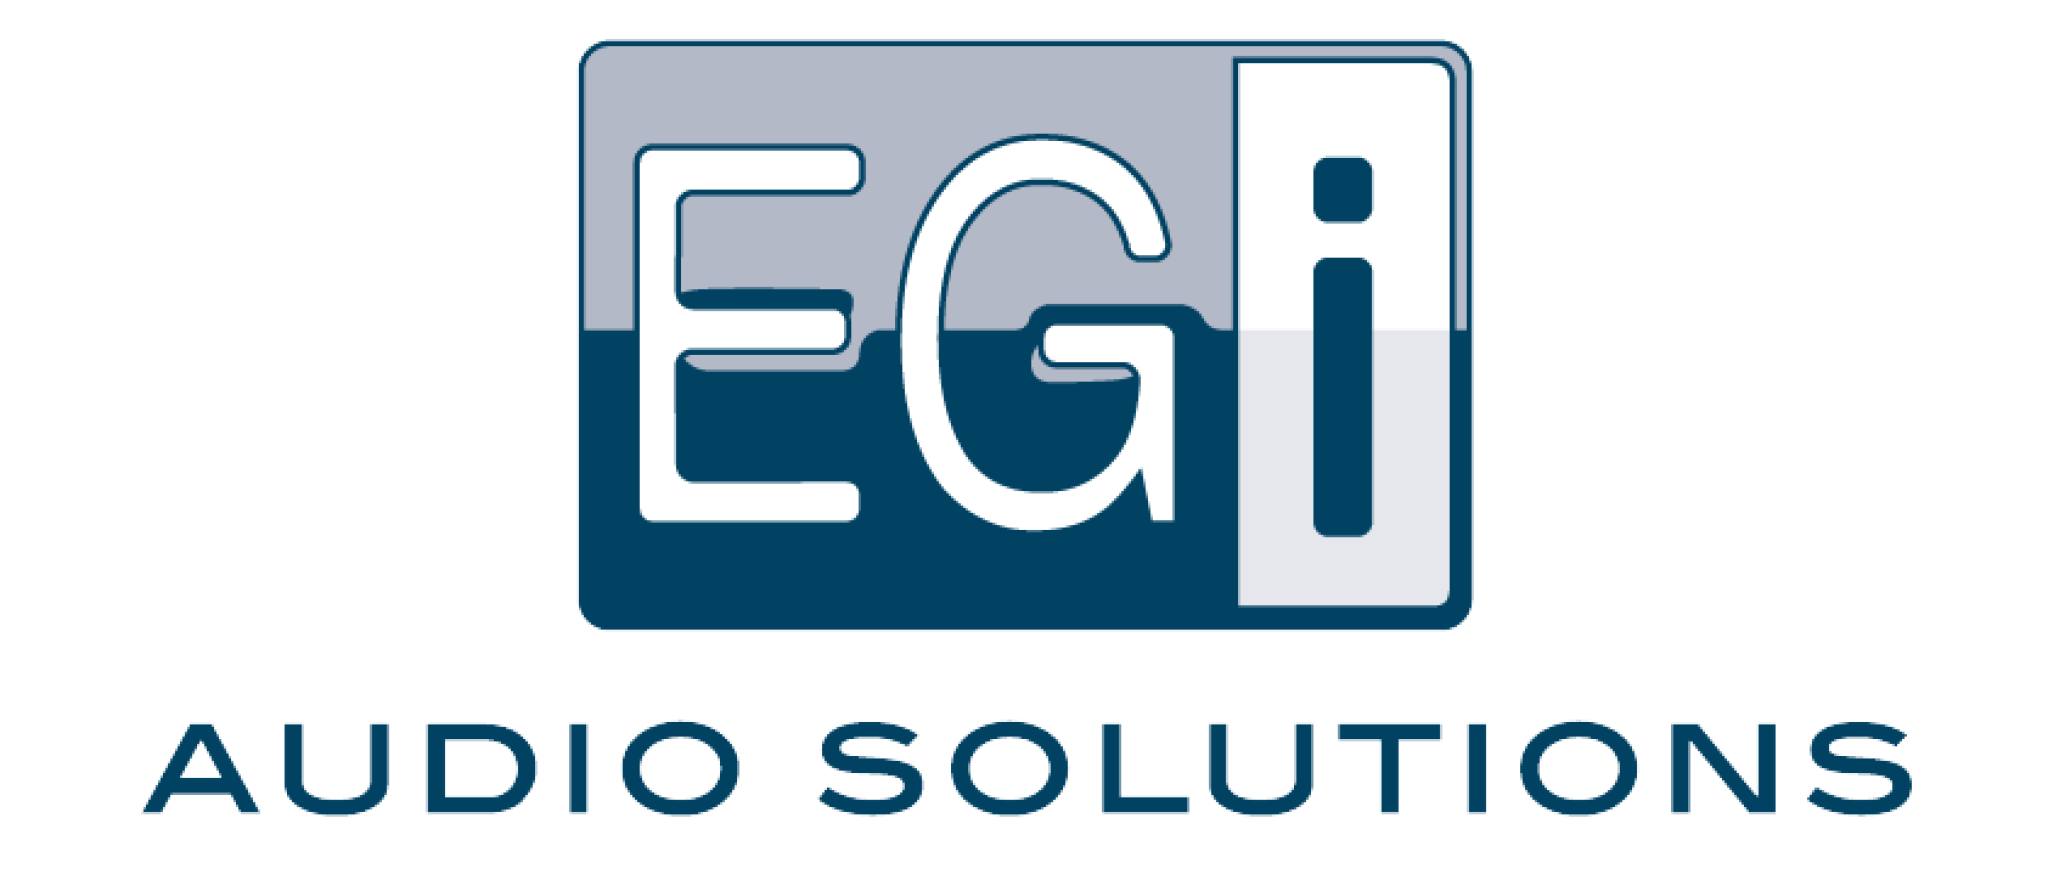 EGi_Audio-solutions.png